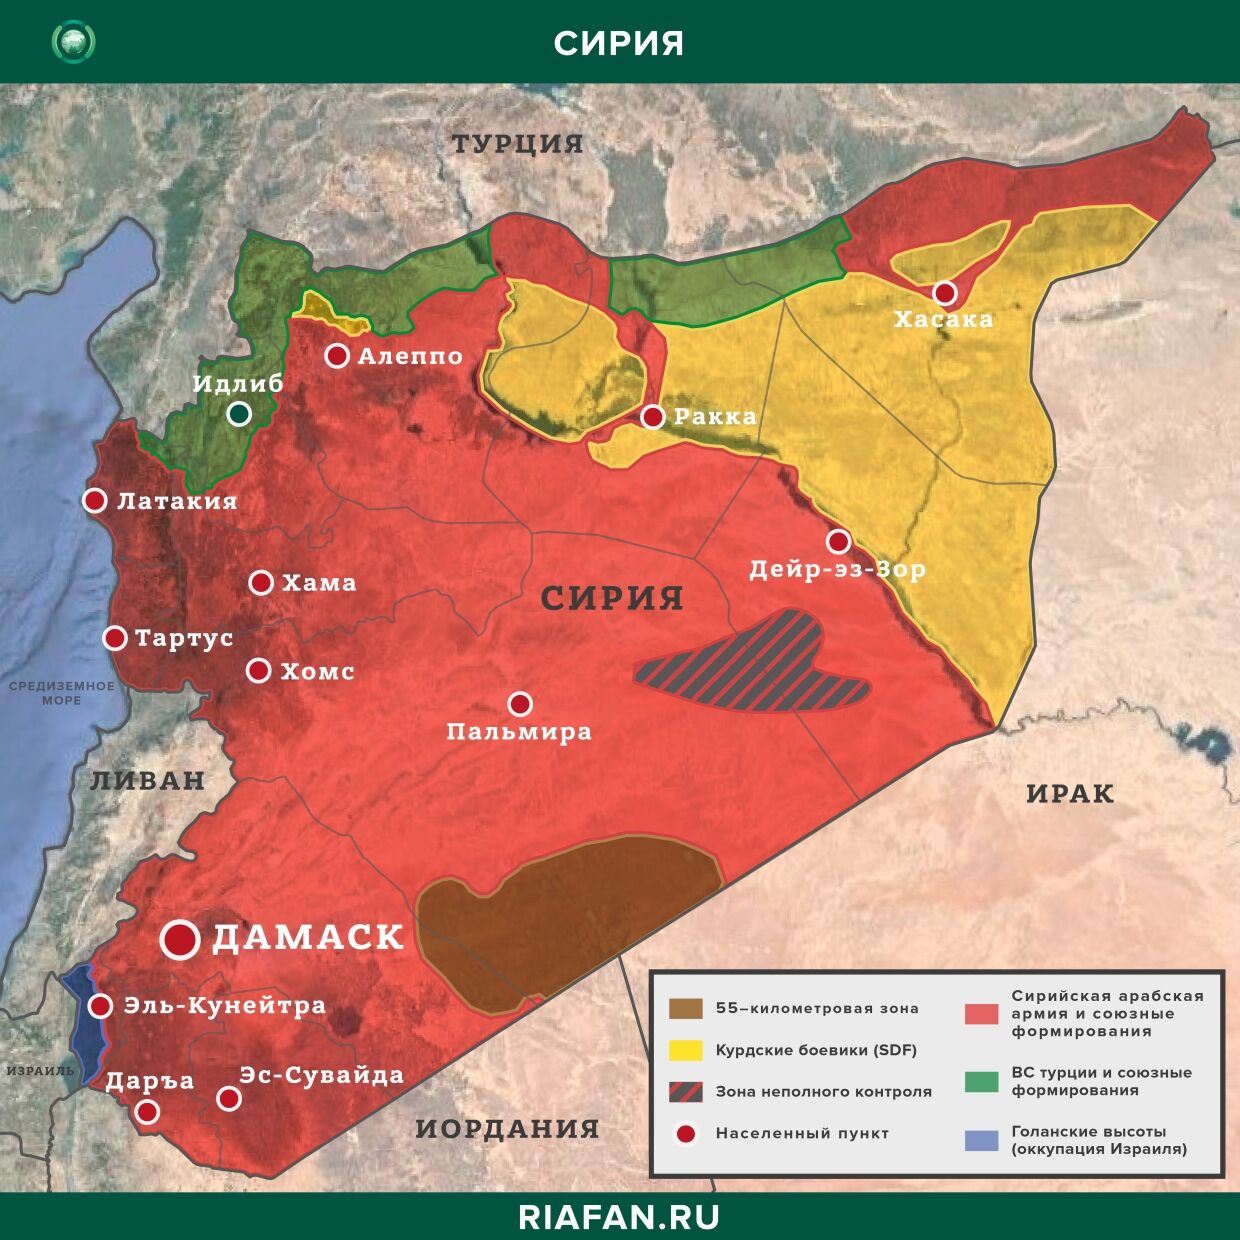 Последние новости Сирии. Сегодня 16 апреля 2020 агентство, боевиков, провинции, Сирии, сообщает, боевики, также, информации, Турции, передает, севере, огонь, группа, данным, Ливии, неизвестных, новостей, открыли, сирийских, лагеря